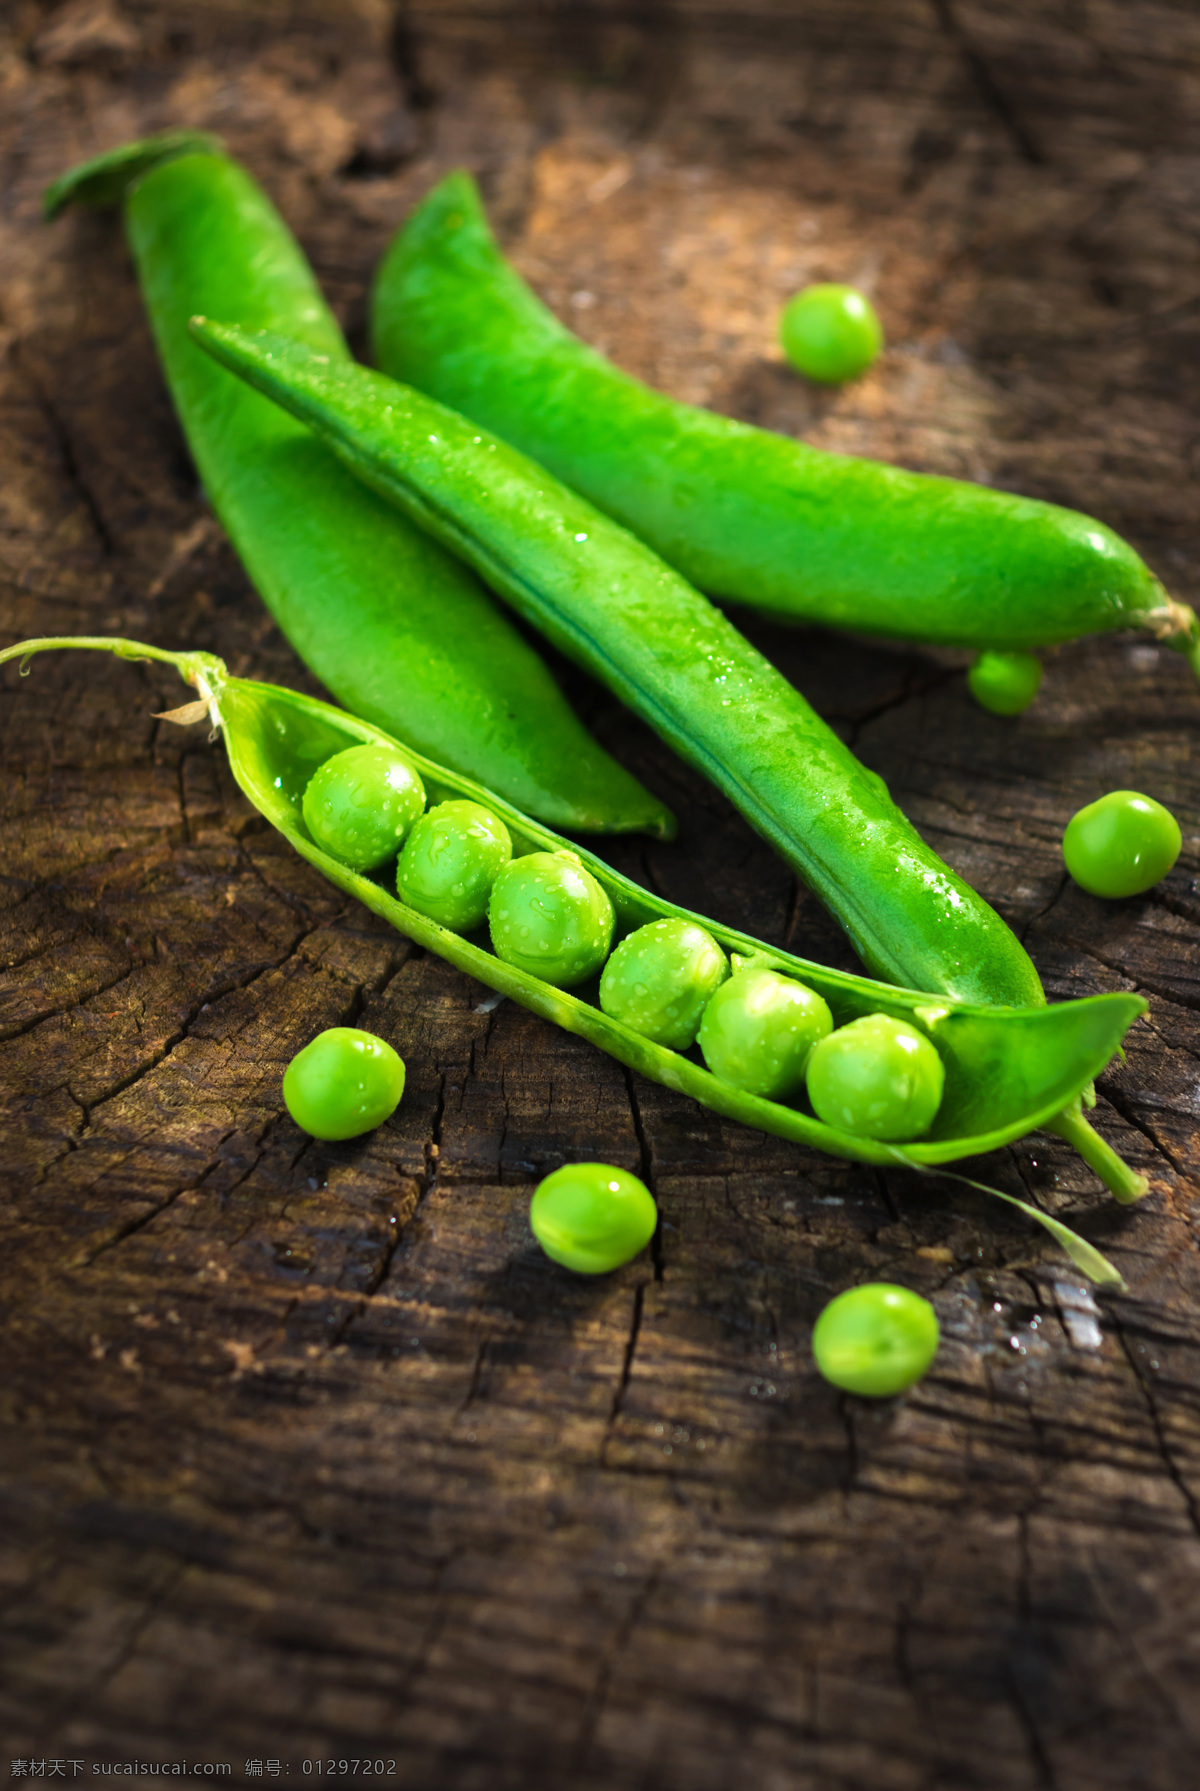 唯美豌豆 唯美 食物 食品 蔬菜 素食 豌豆 豆类 原料 营养 健康 原生态 餐饮美食 食物原料